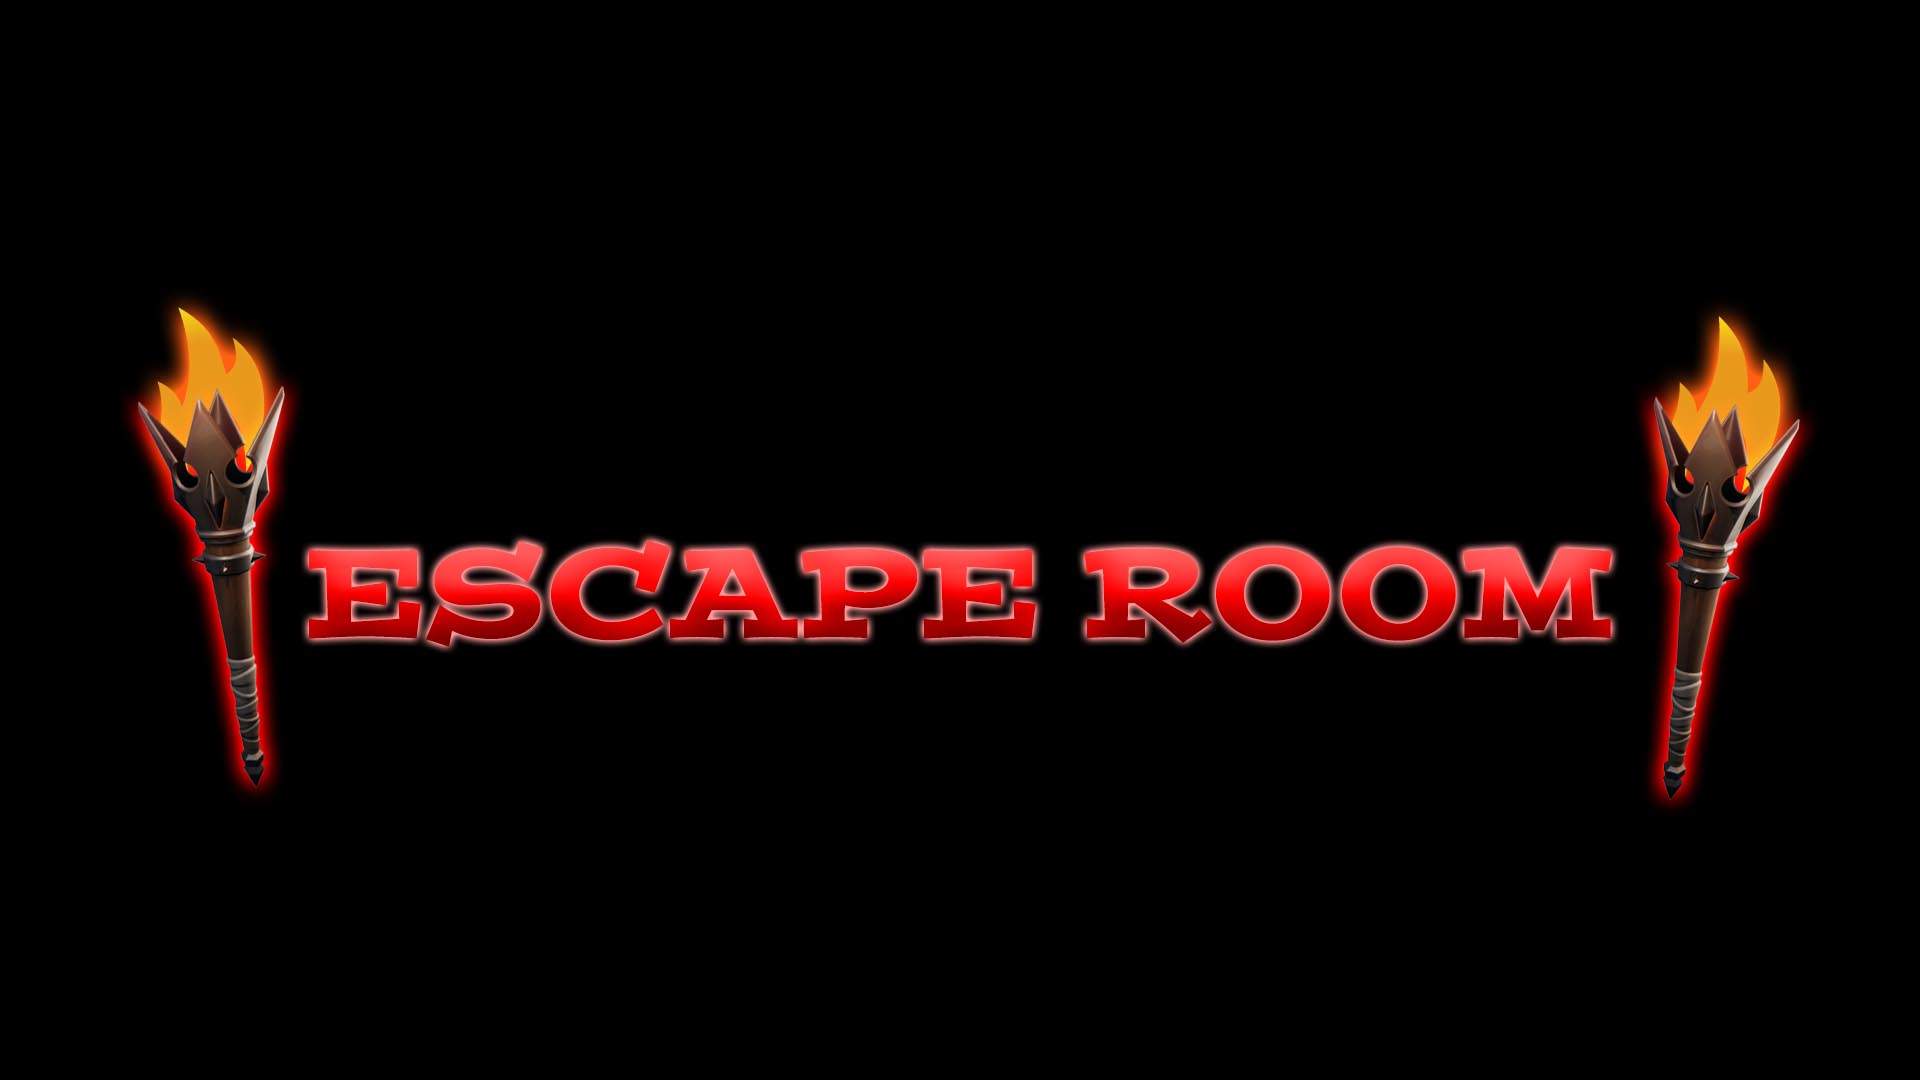 Escape Room - Find The Button